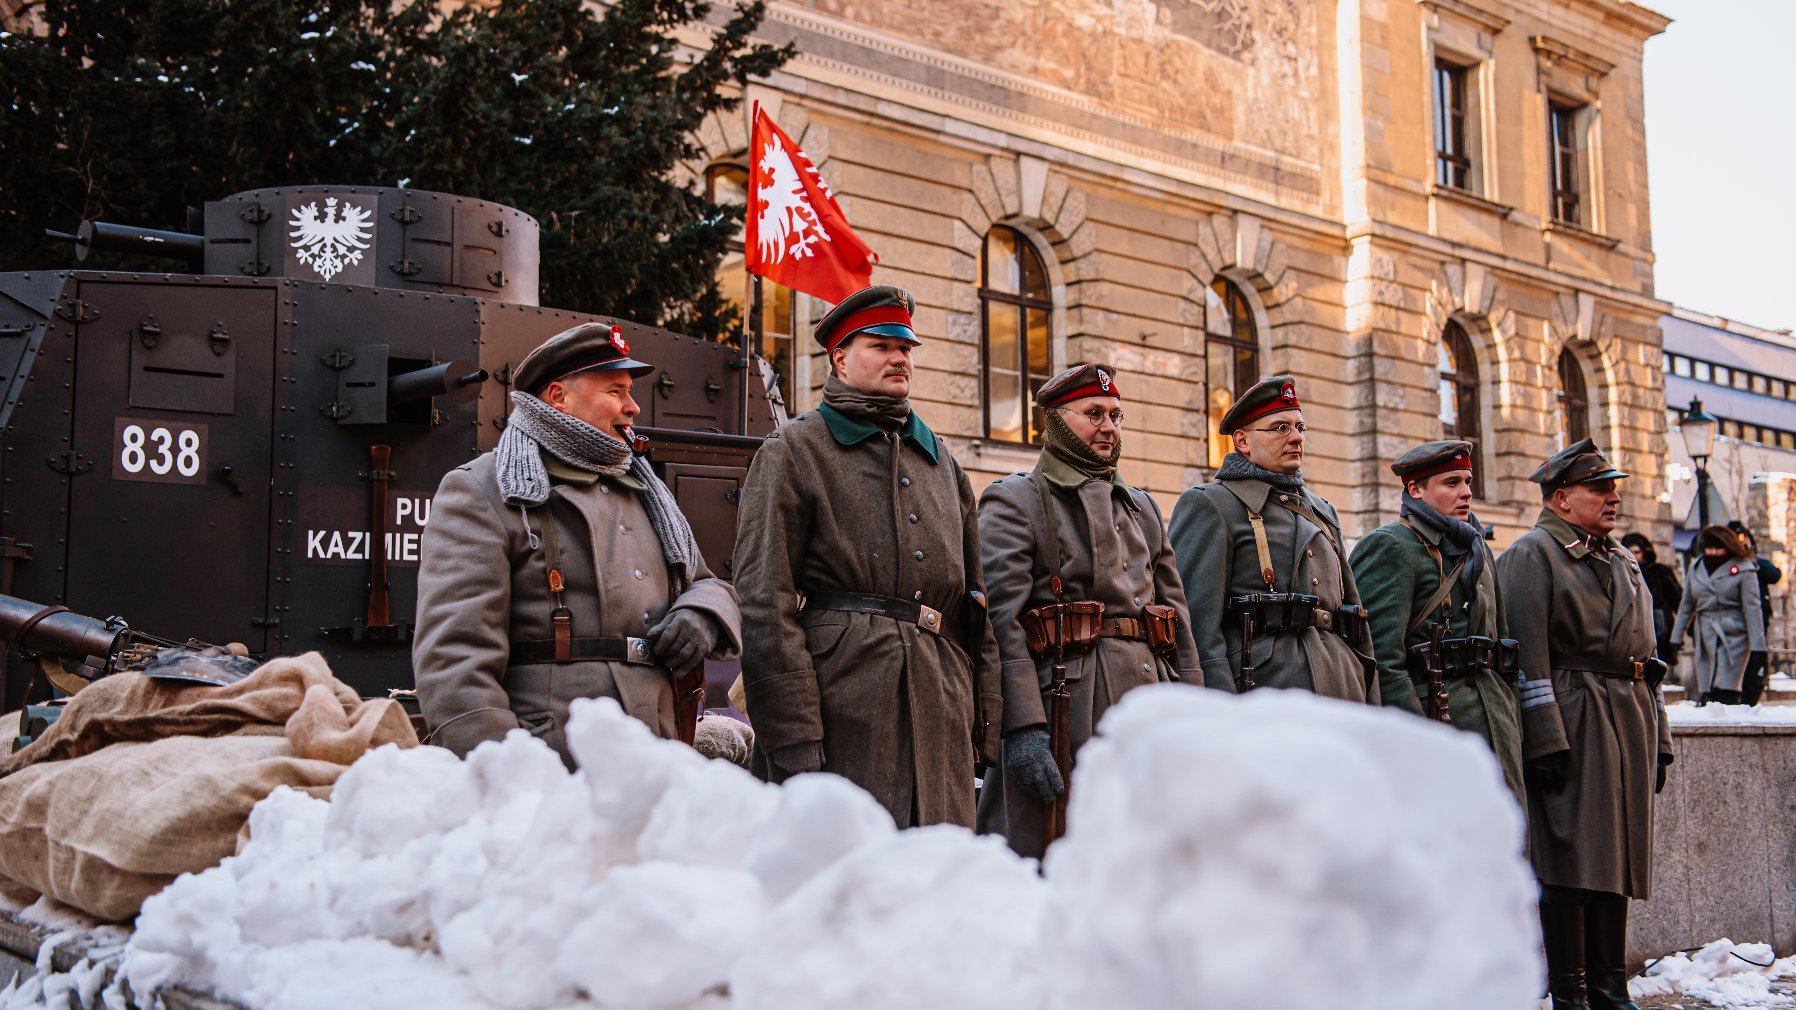 Zdjęcie przedstawia grupę rekonstruktorów w mundurach Powstania Wielkopolskiego. Za nimi stoi pojazd opancerzony.